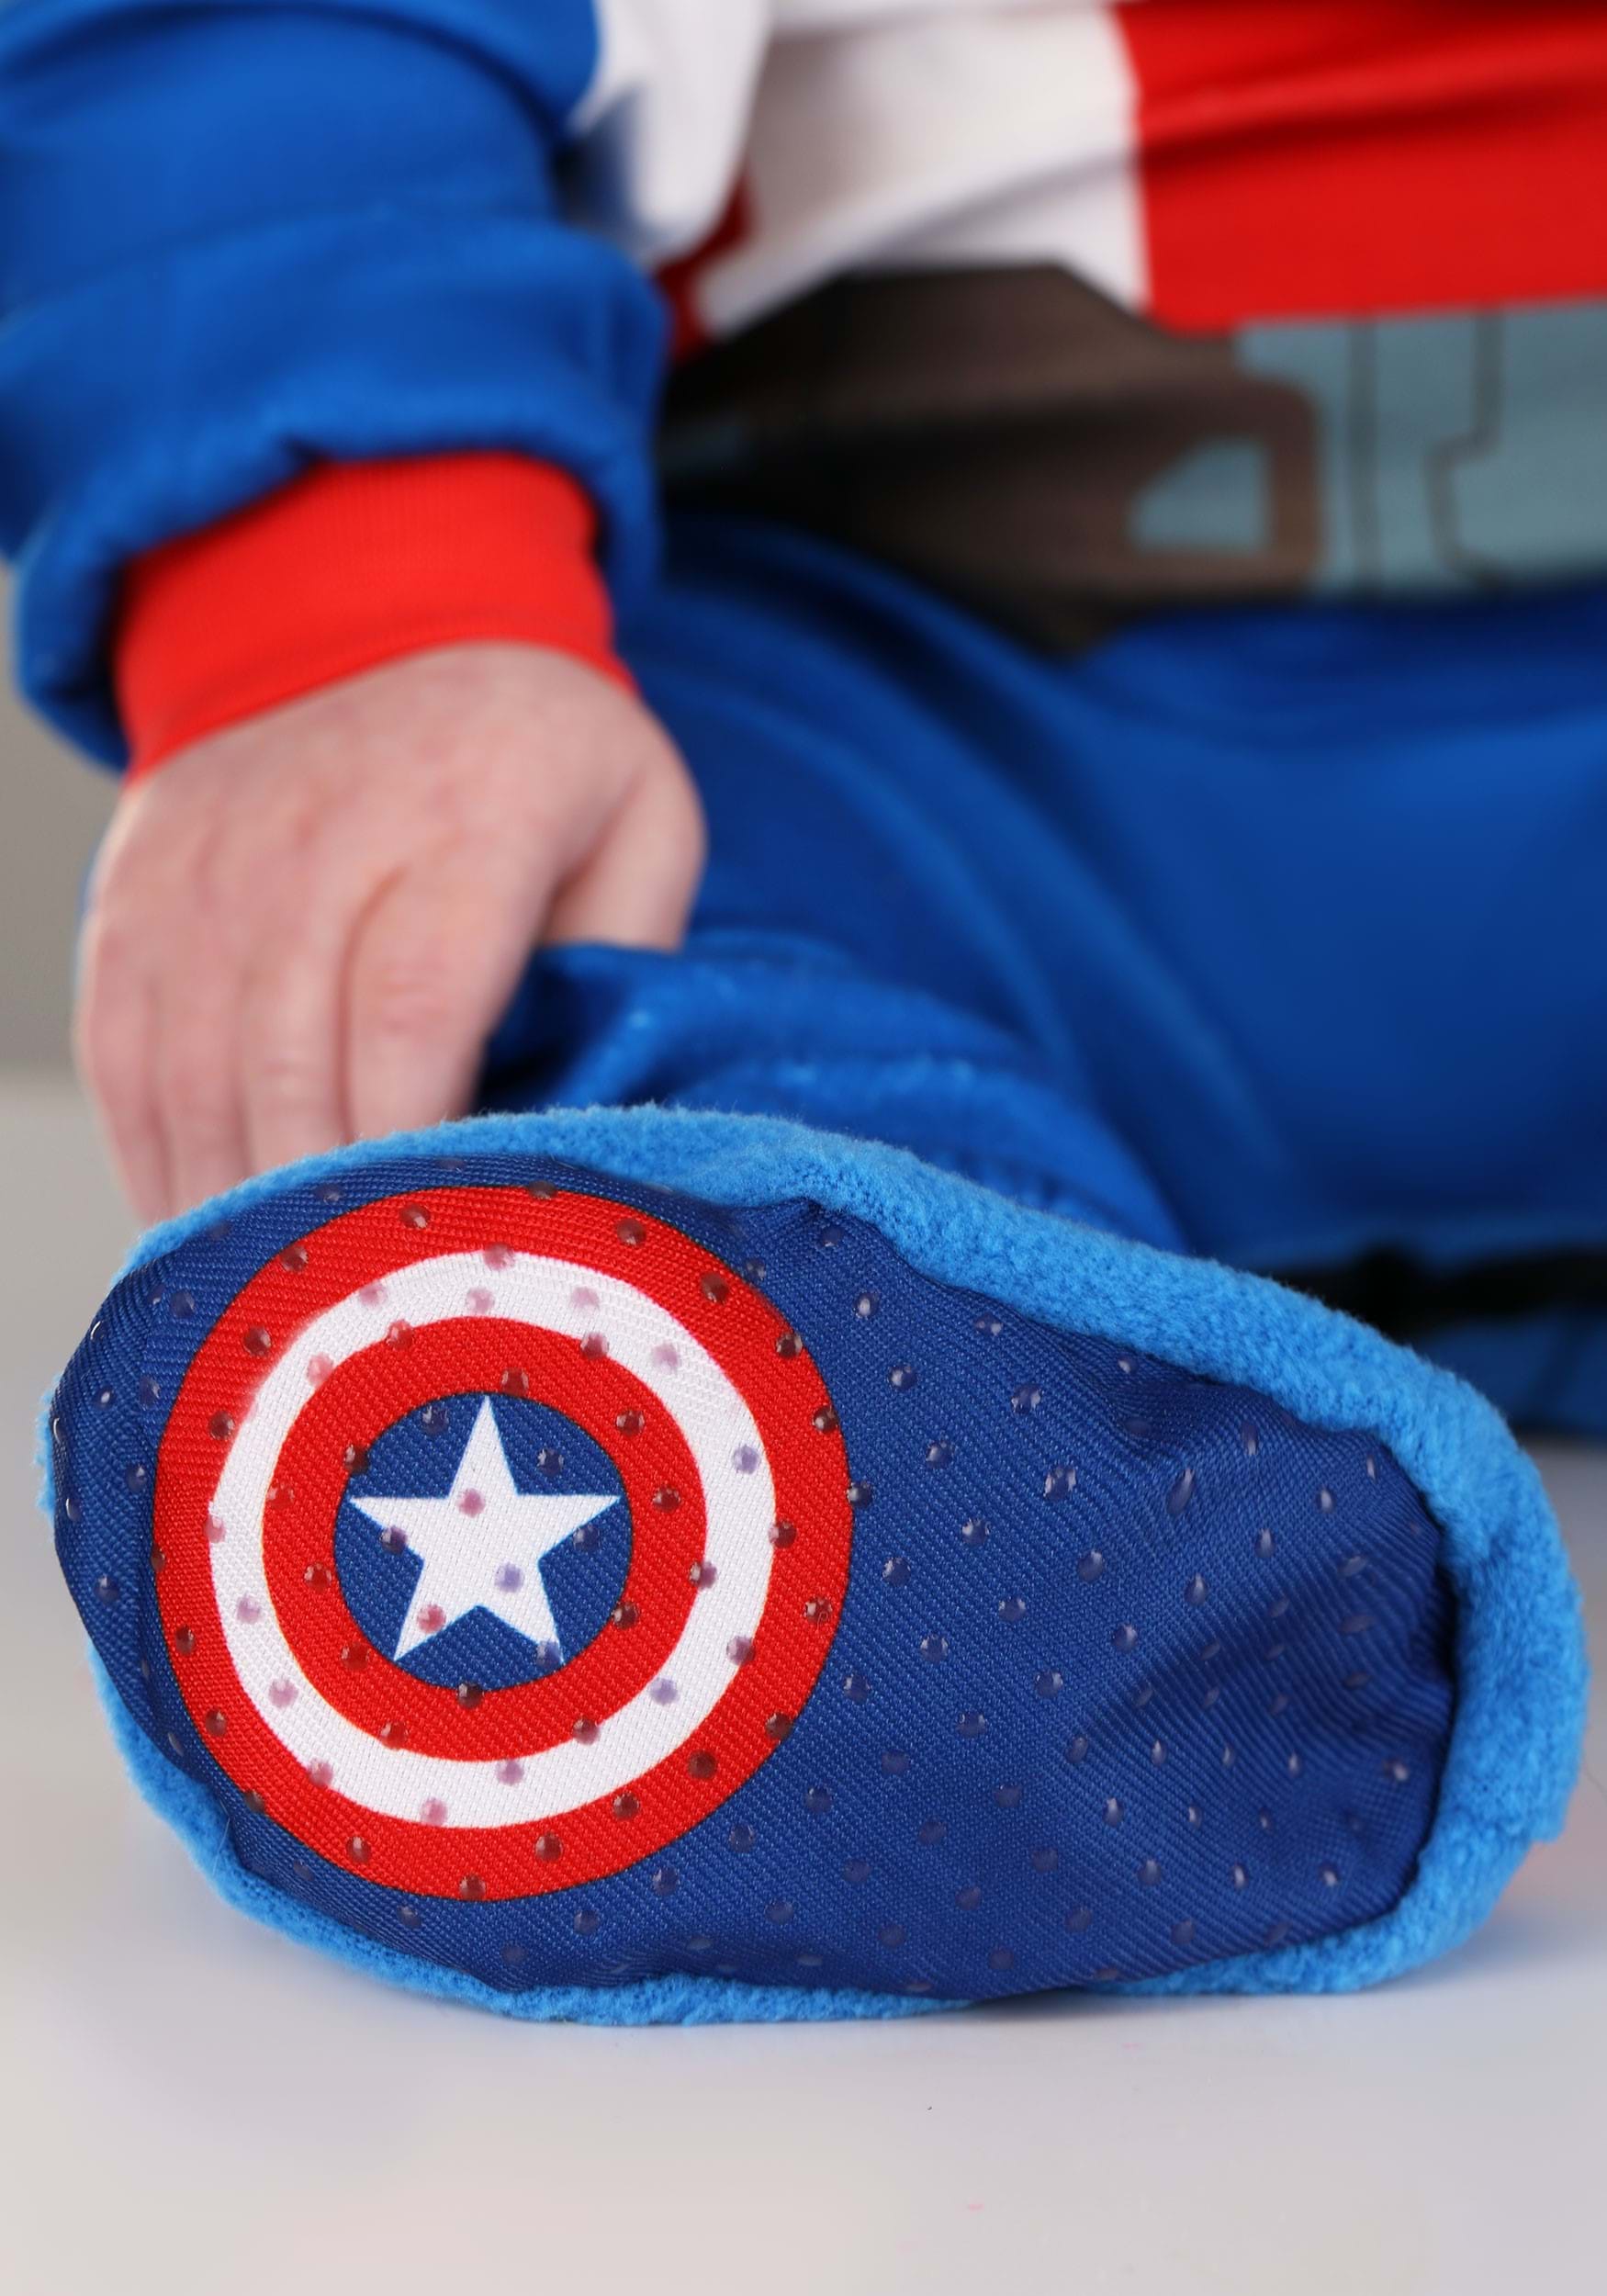 Captain America Steve Rogers Infant Costume